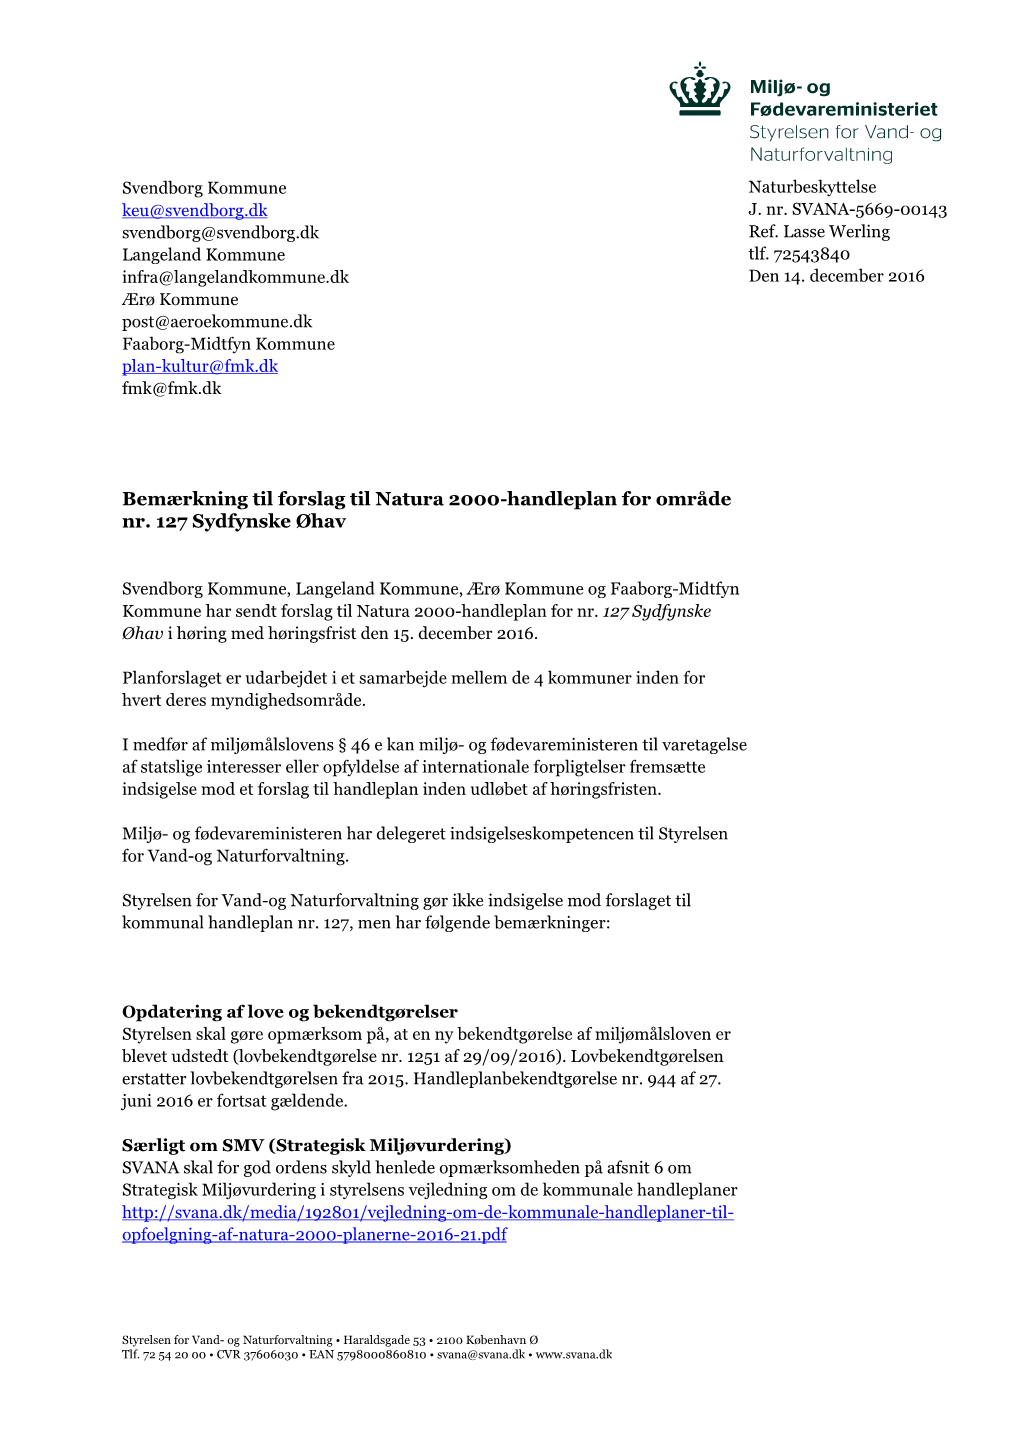 Bemærkning Til Forslag Til Natura 2000-Handleplan for Område Nr. 127 Sydfynske Øhav